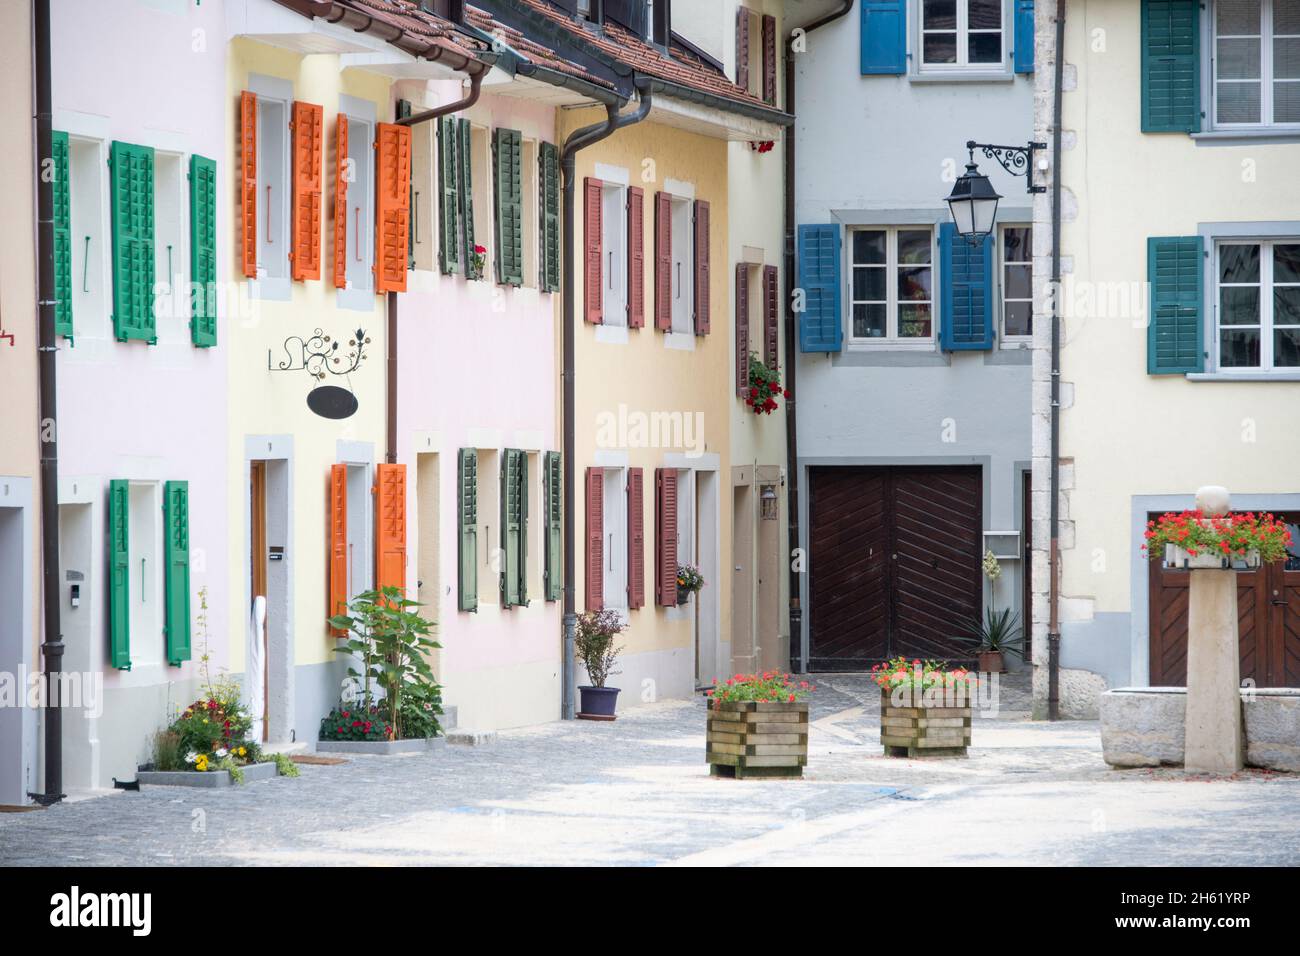 impressioni da saint-ursanne, canton giura, svizzera Foto Stock